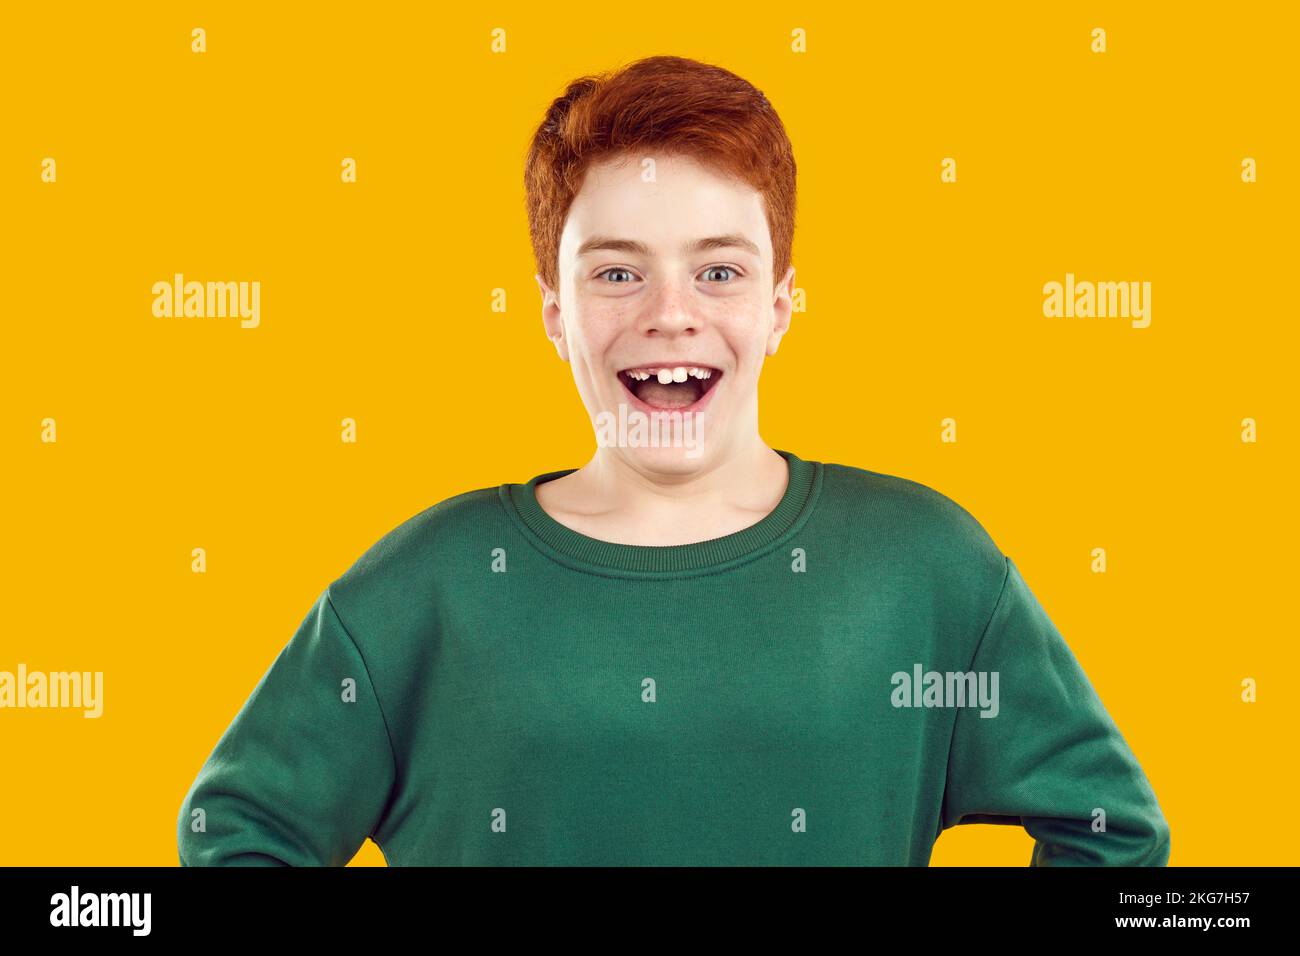 Retrato de alegre niño preadolescente que se ríe divertido mostrando sonrisa con dientes torcidos. Foto de stock